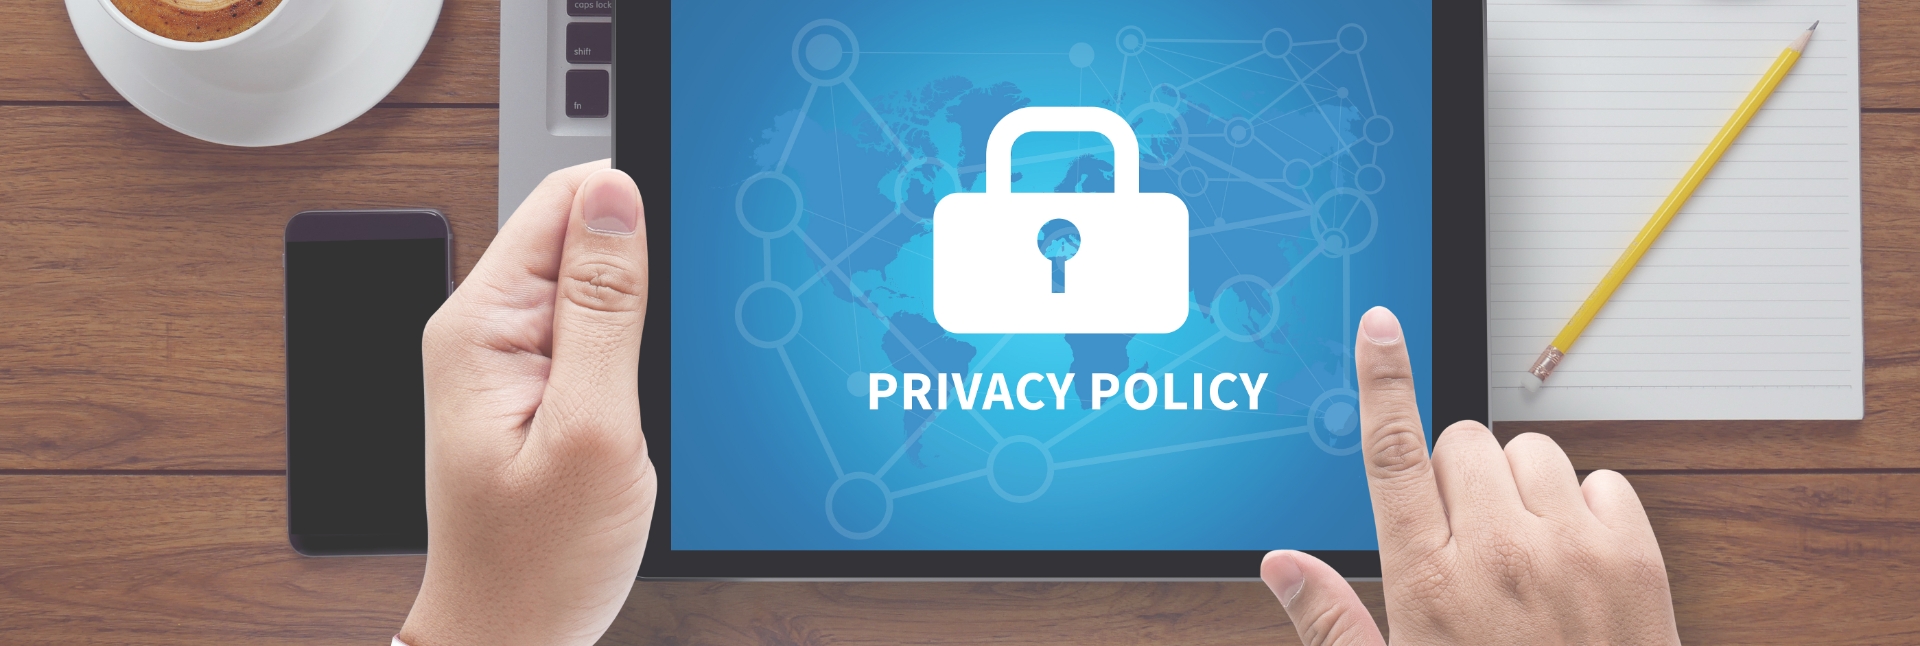 qbits-privacy-policy